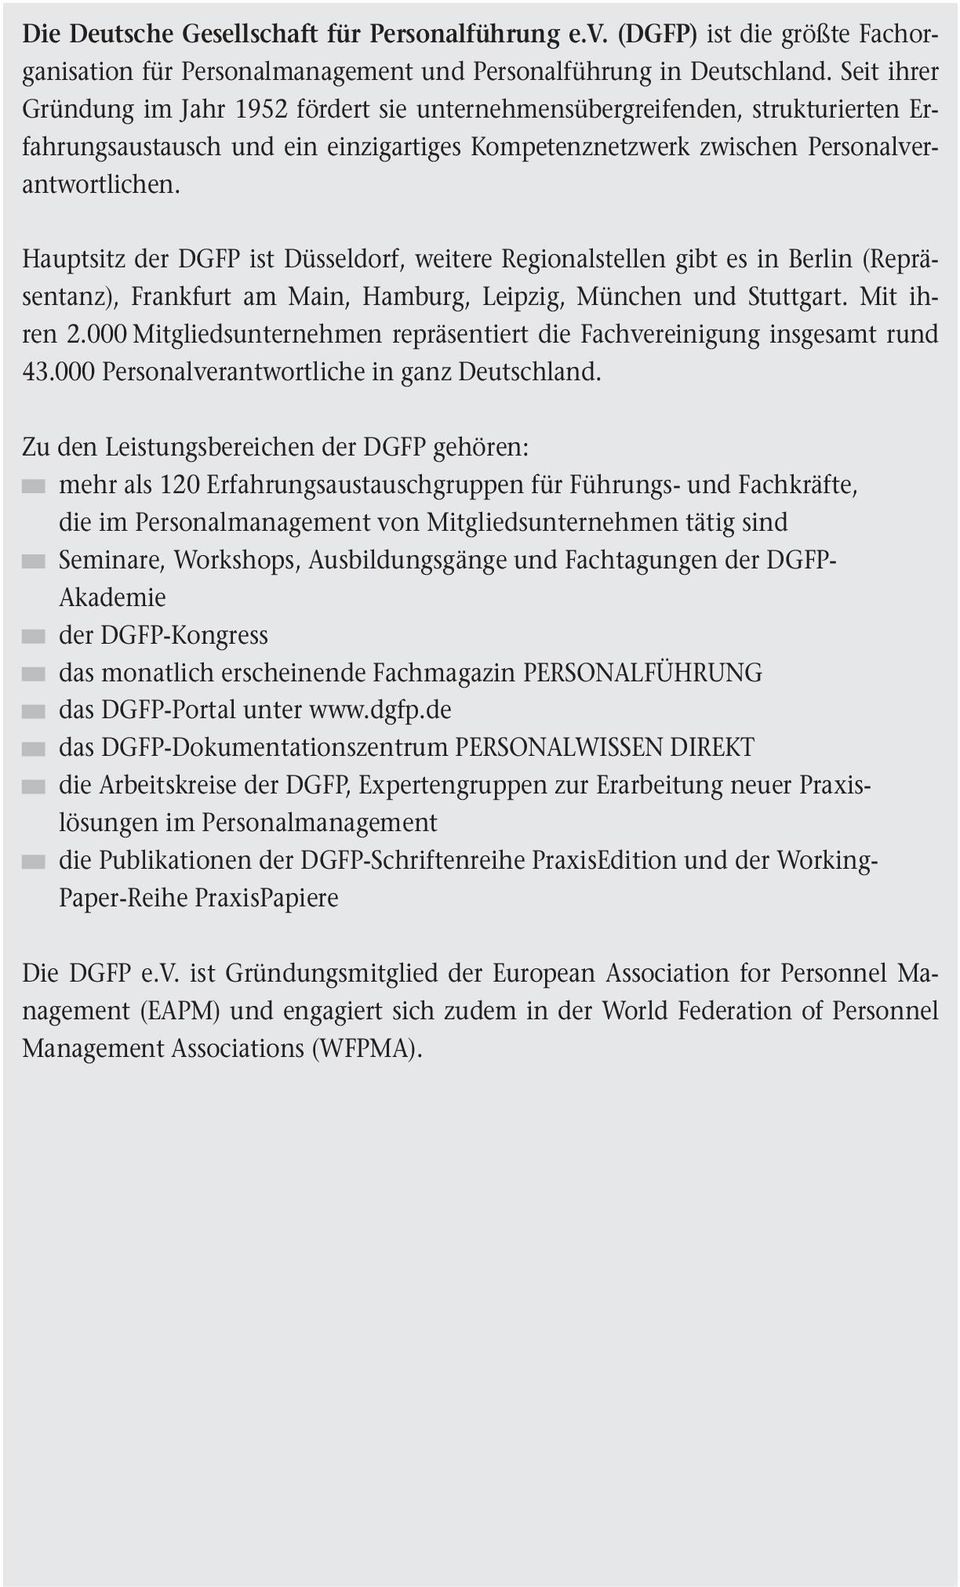 Hauptsitz der DGFP ist Düsseldorf, weitere Regionalstellen gibt es in Berlin (Repräsentanz), Frankfurt am Main, Hamburg, Leipzig, München und Stuttgart. Mit ihren 2.